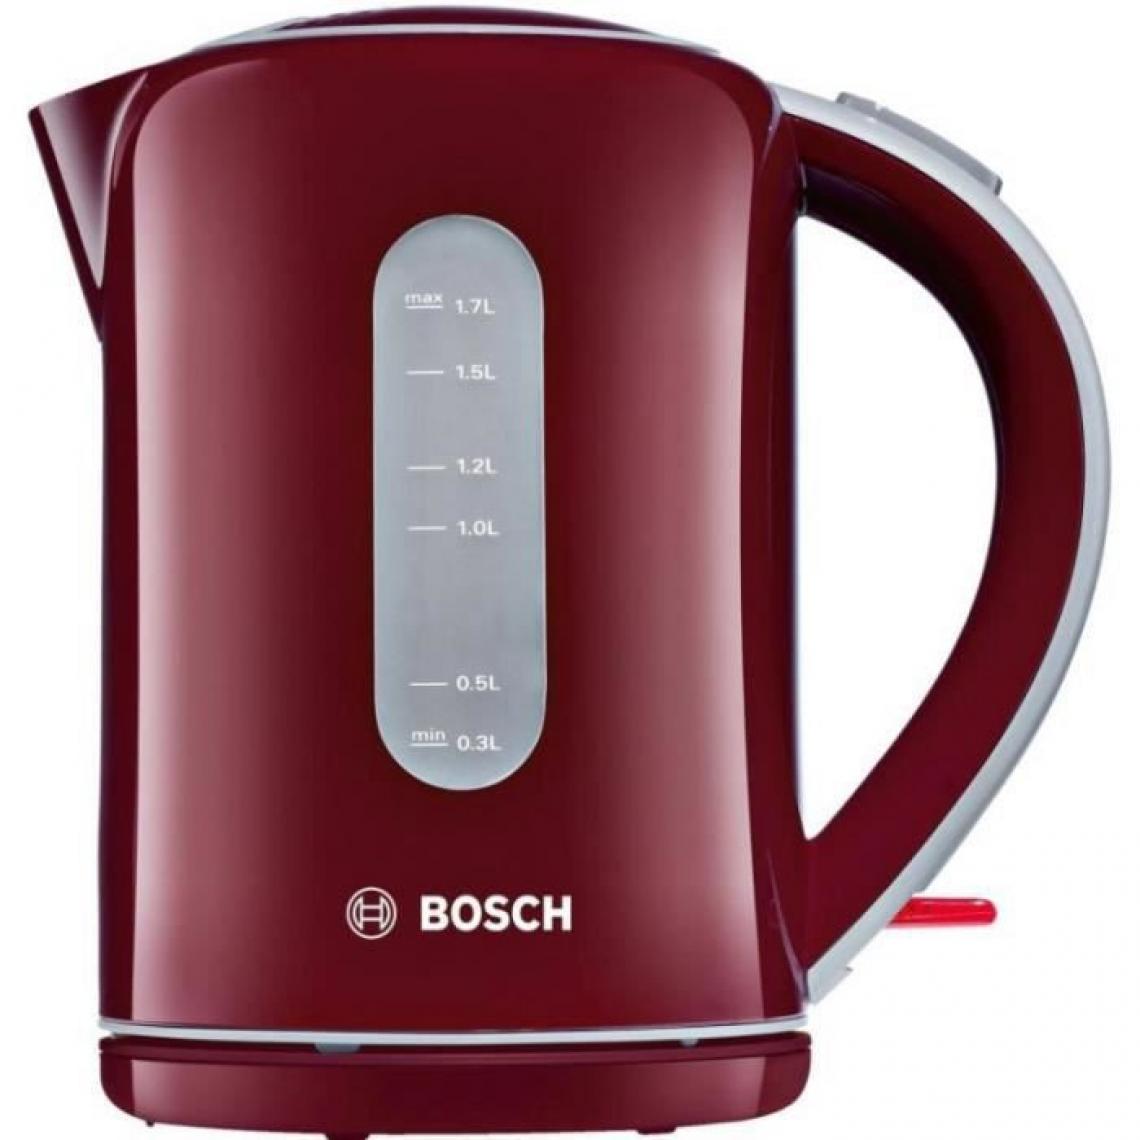 Bosch - BOSCH TWK7604 Bouilloire électrique - Bordeaux - Bouilloire